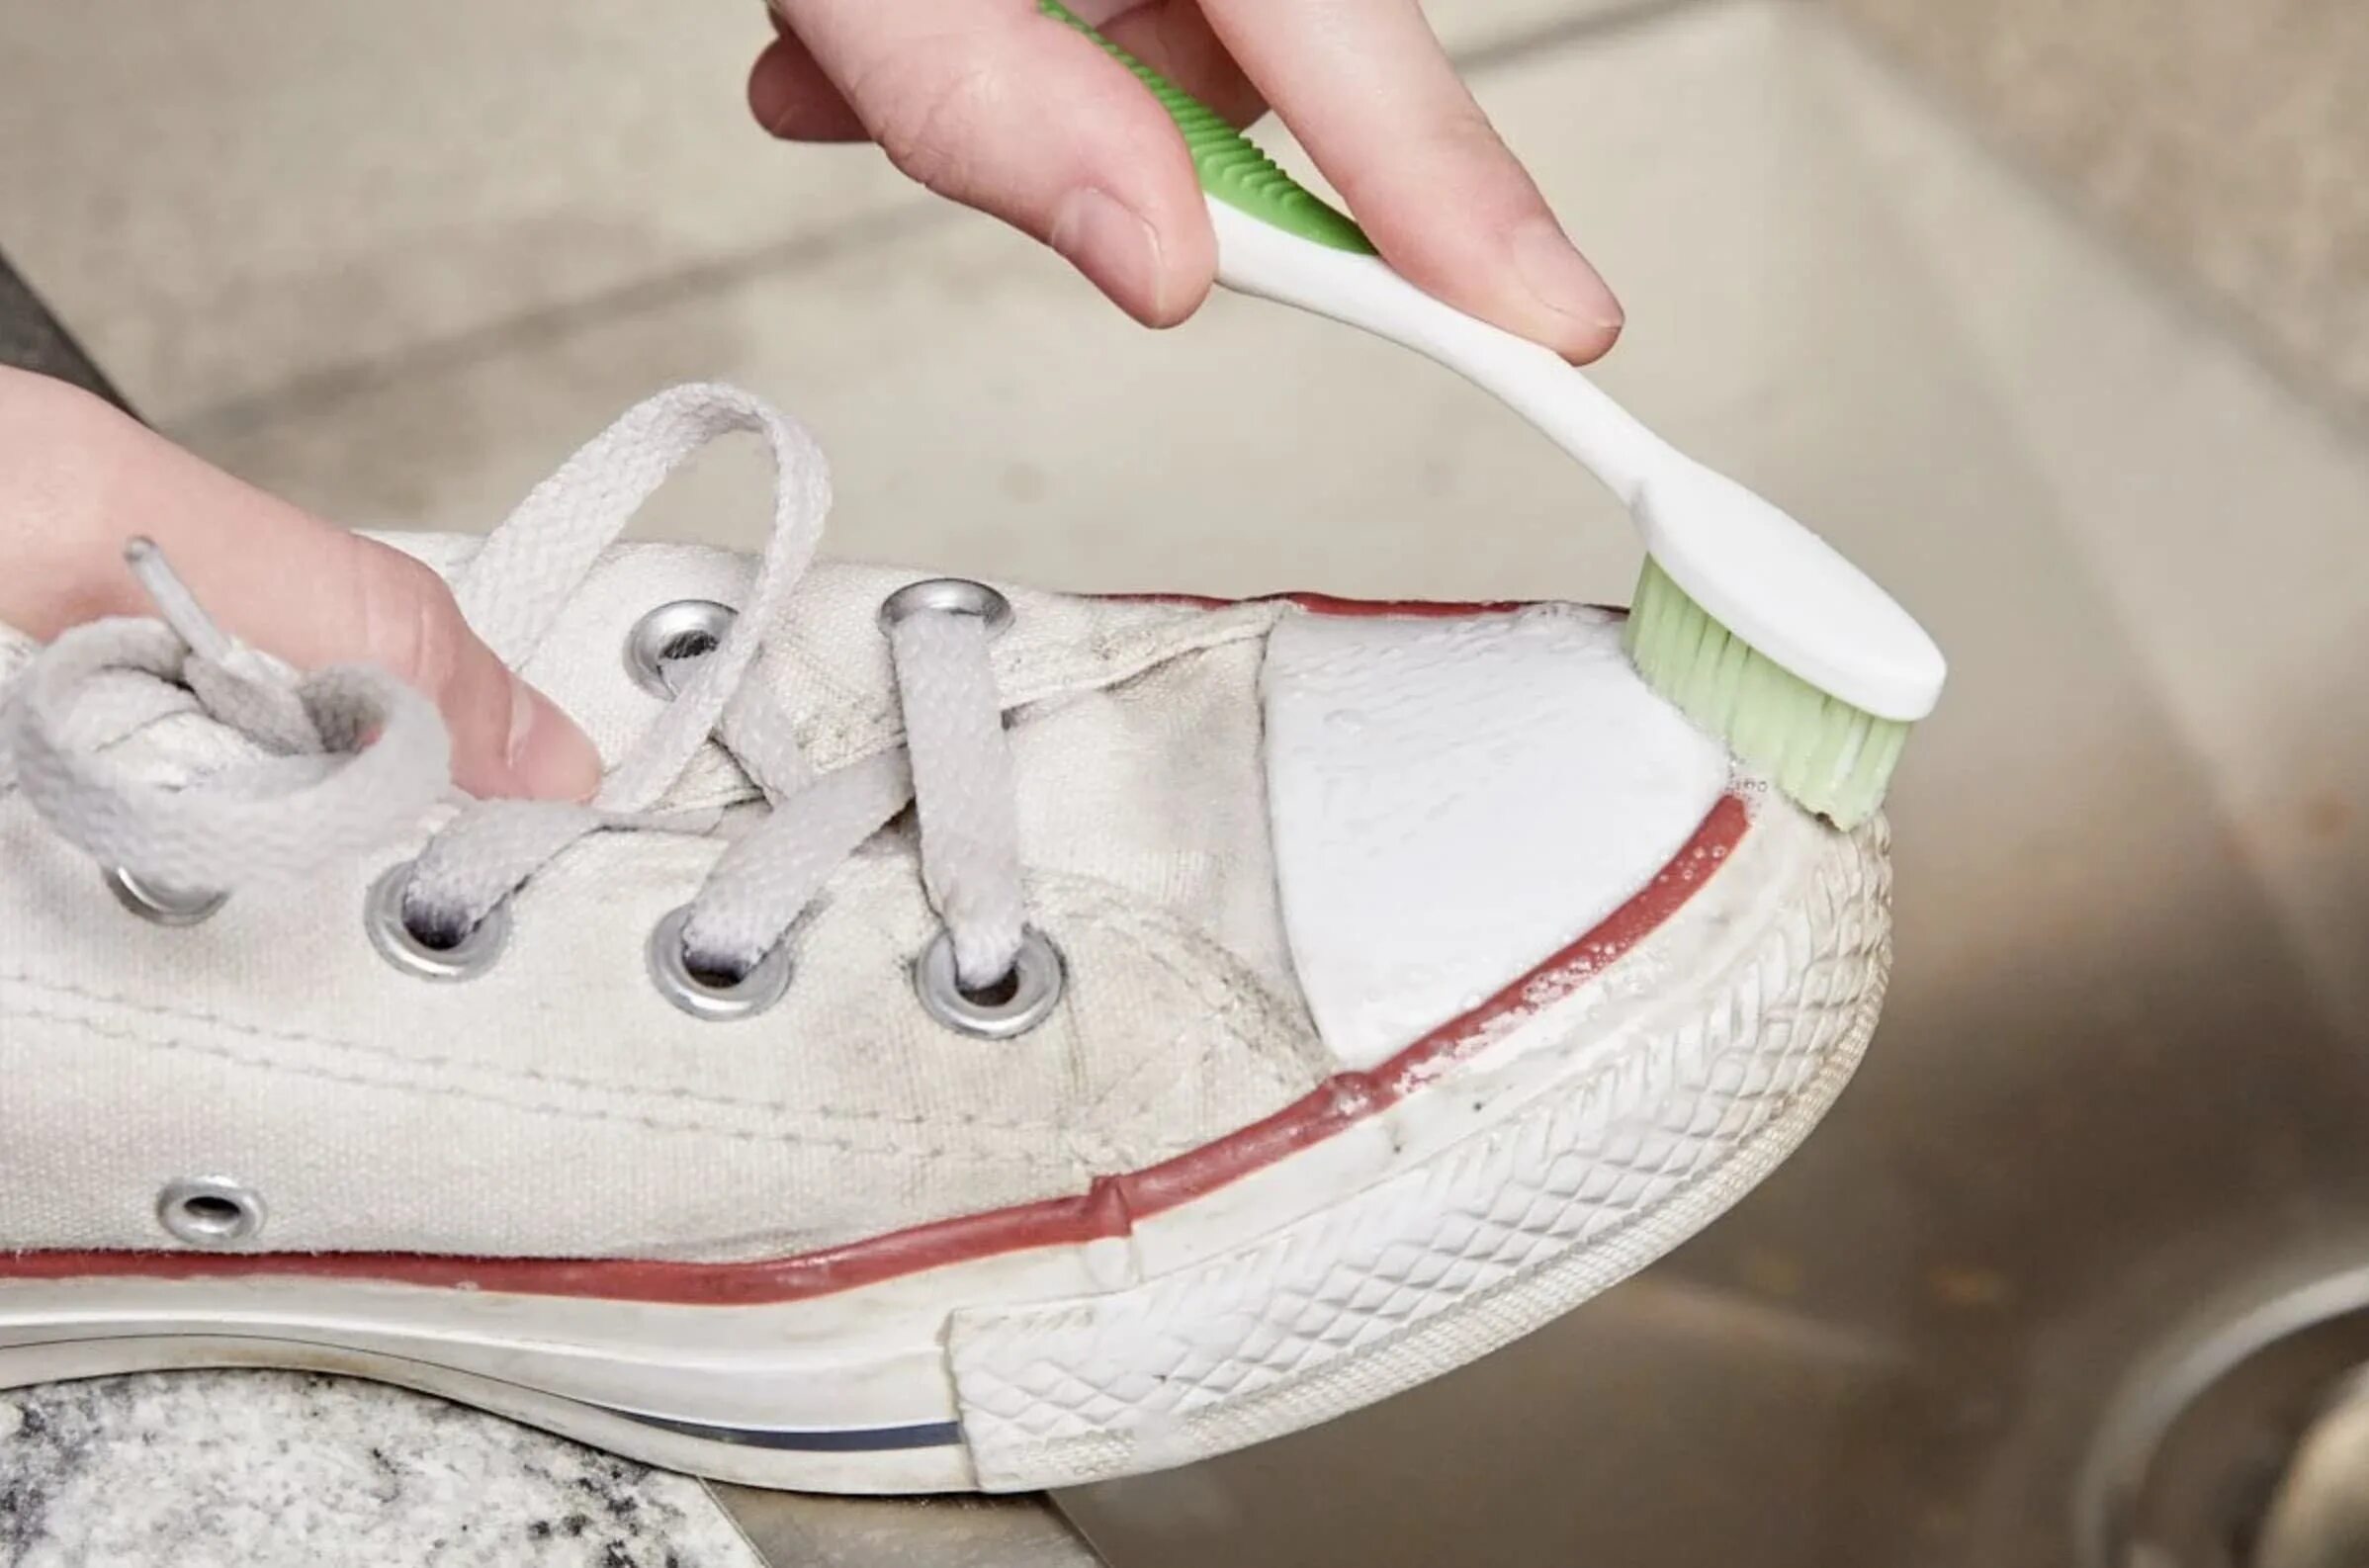 Кеды в клею. Зубная паста для кроссовок. Протирает белую кеды салфеткой. Очистить белую обувь зубной пастой. Чем покрасить подошву кроссовок